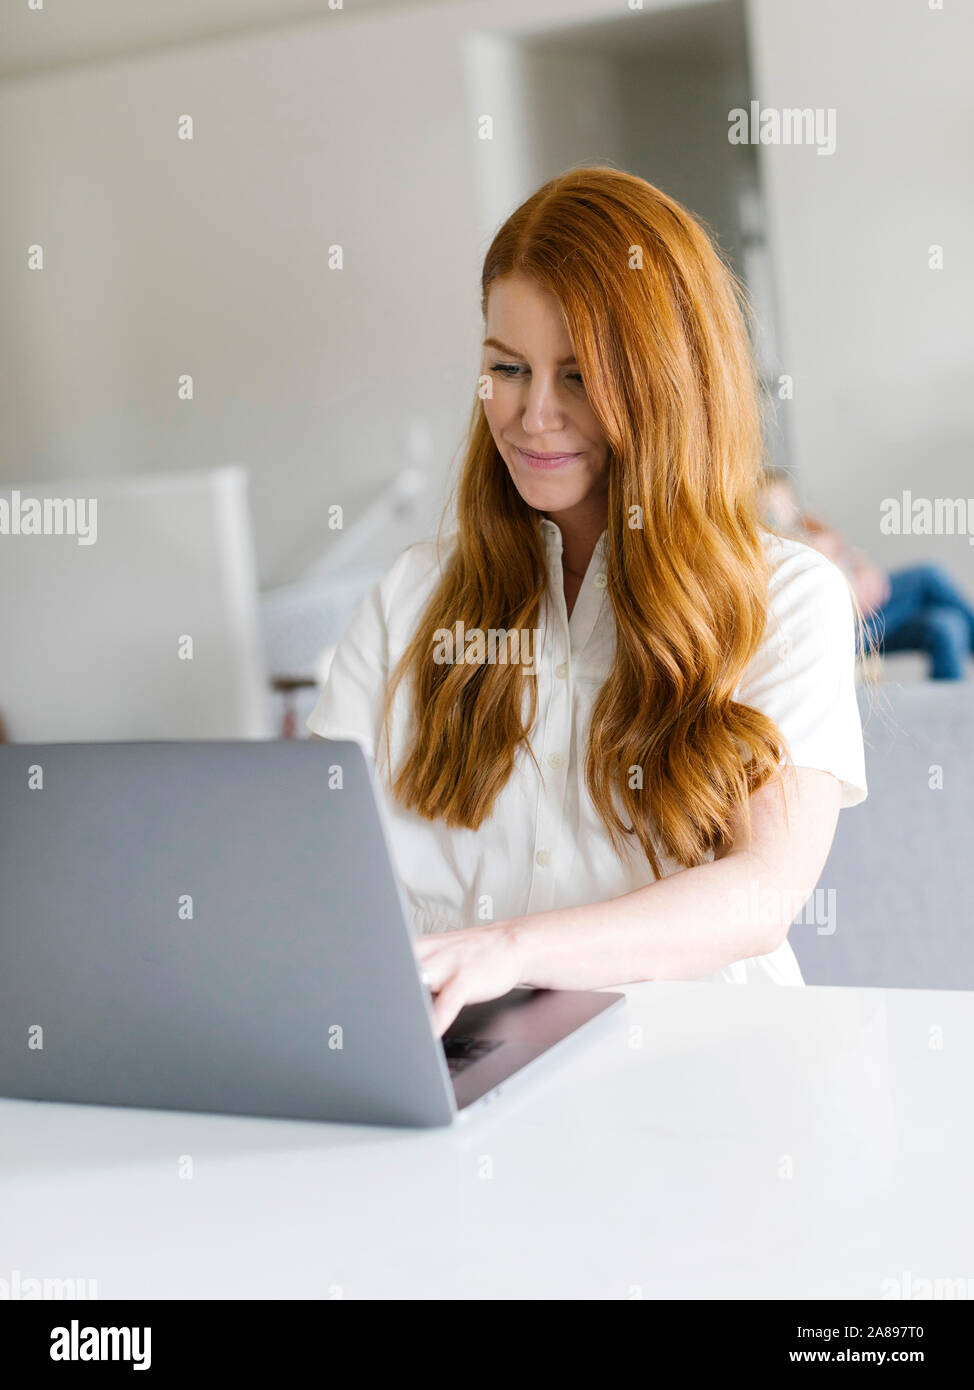 Femme redirigée utilisant un ordinateur portable à la maison Banque D'Images